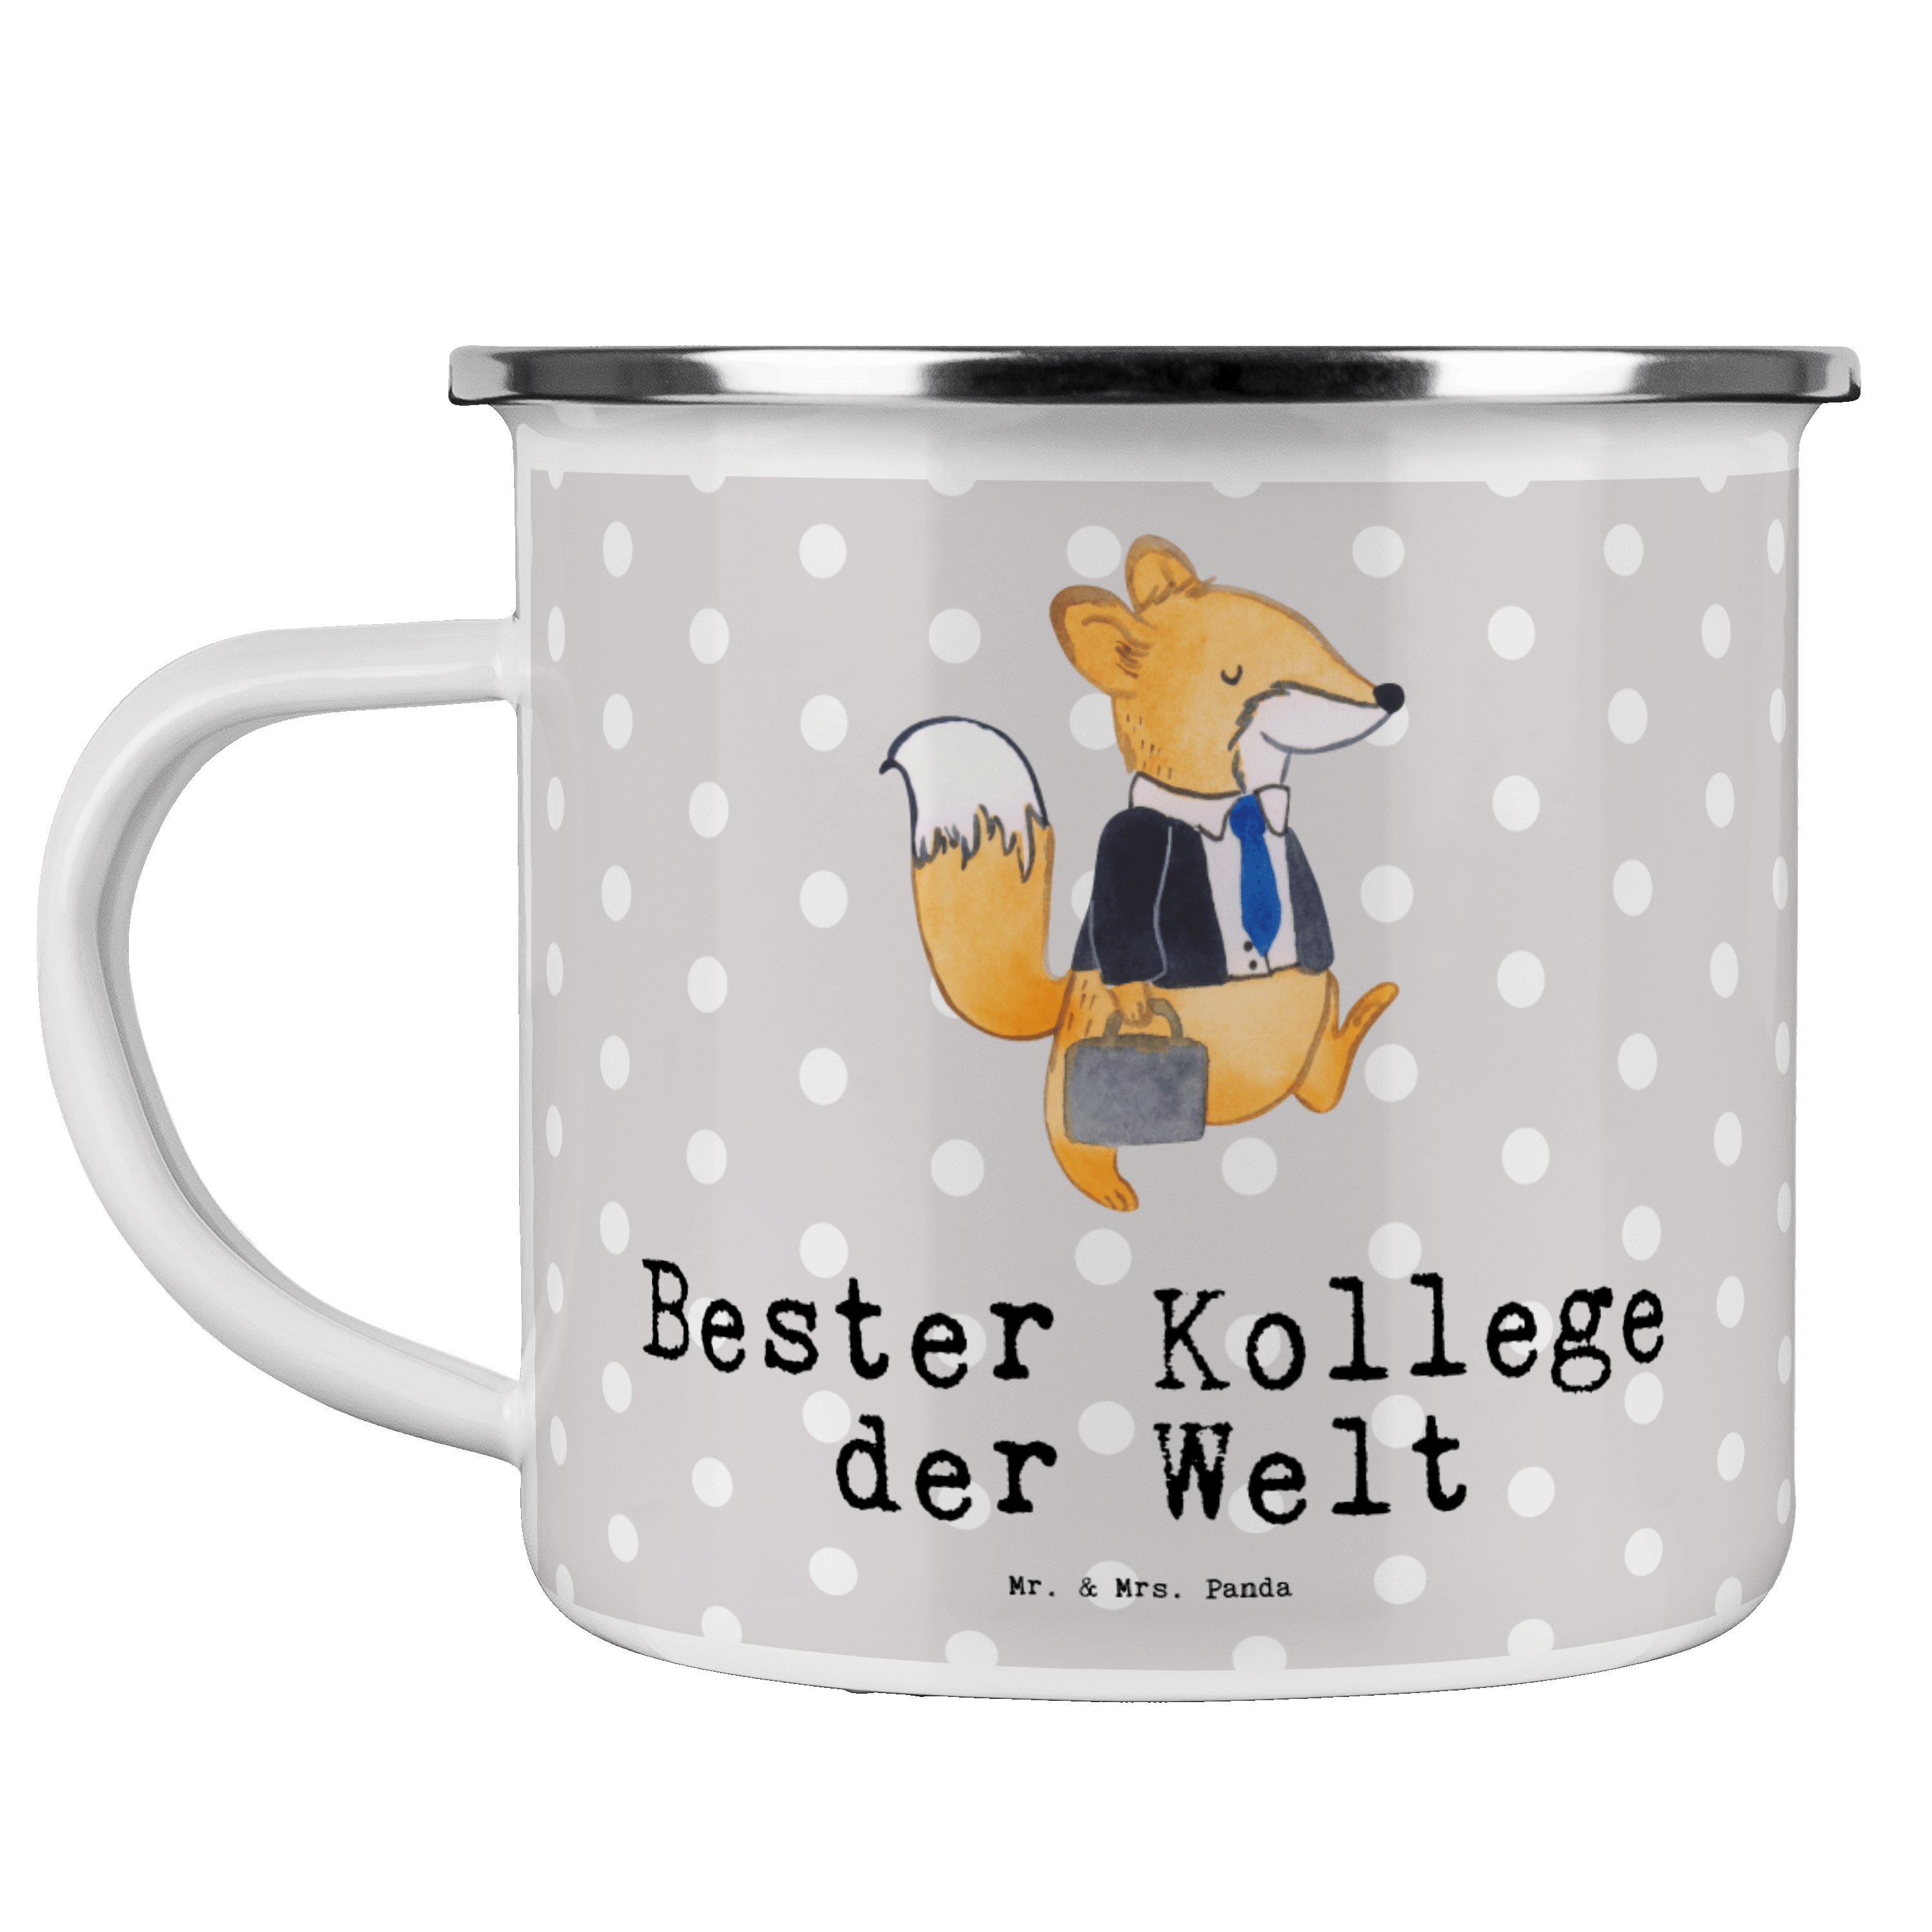 Mr. & Bester Panda - Welt Mrs. Mitarbeiter, der Fuchs Geschenk, Emaille Kollege Becher - Grau Pastell